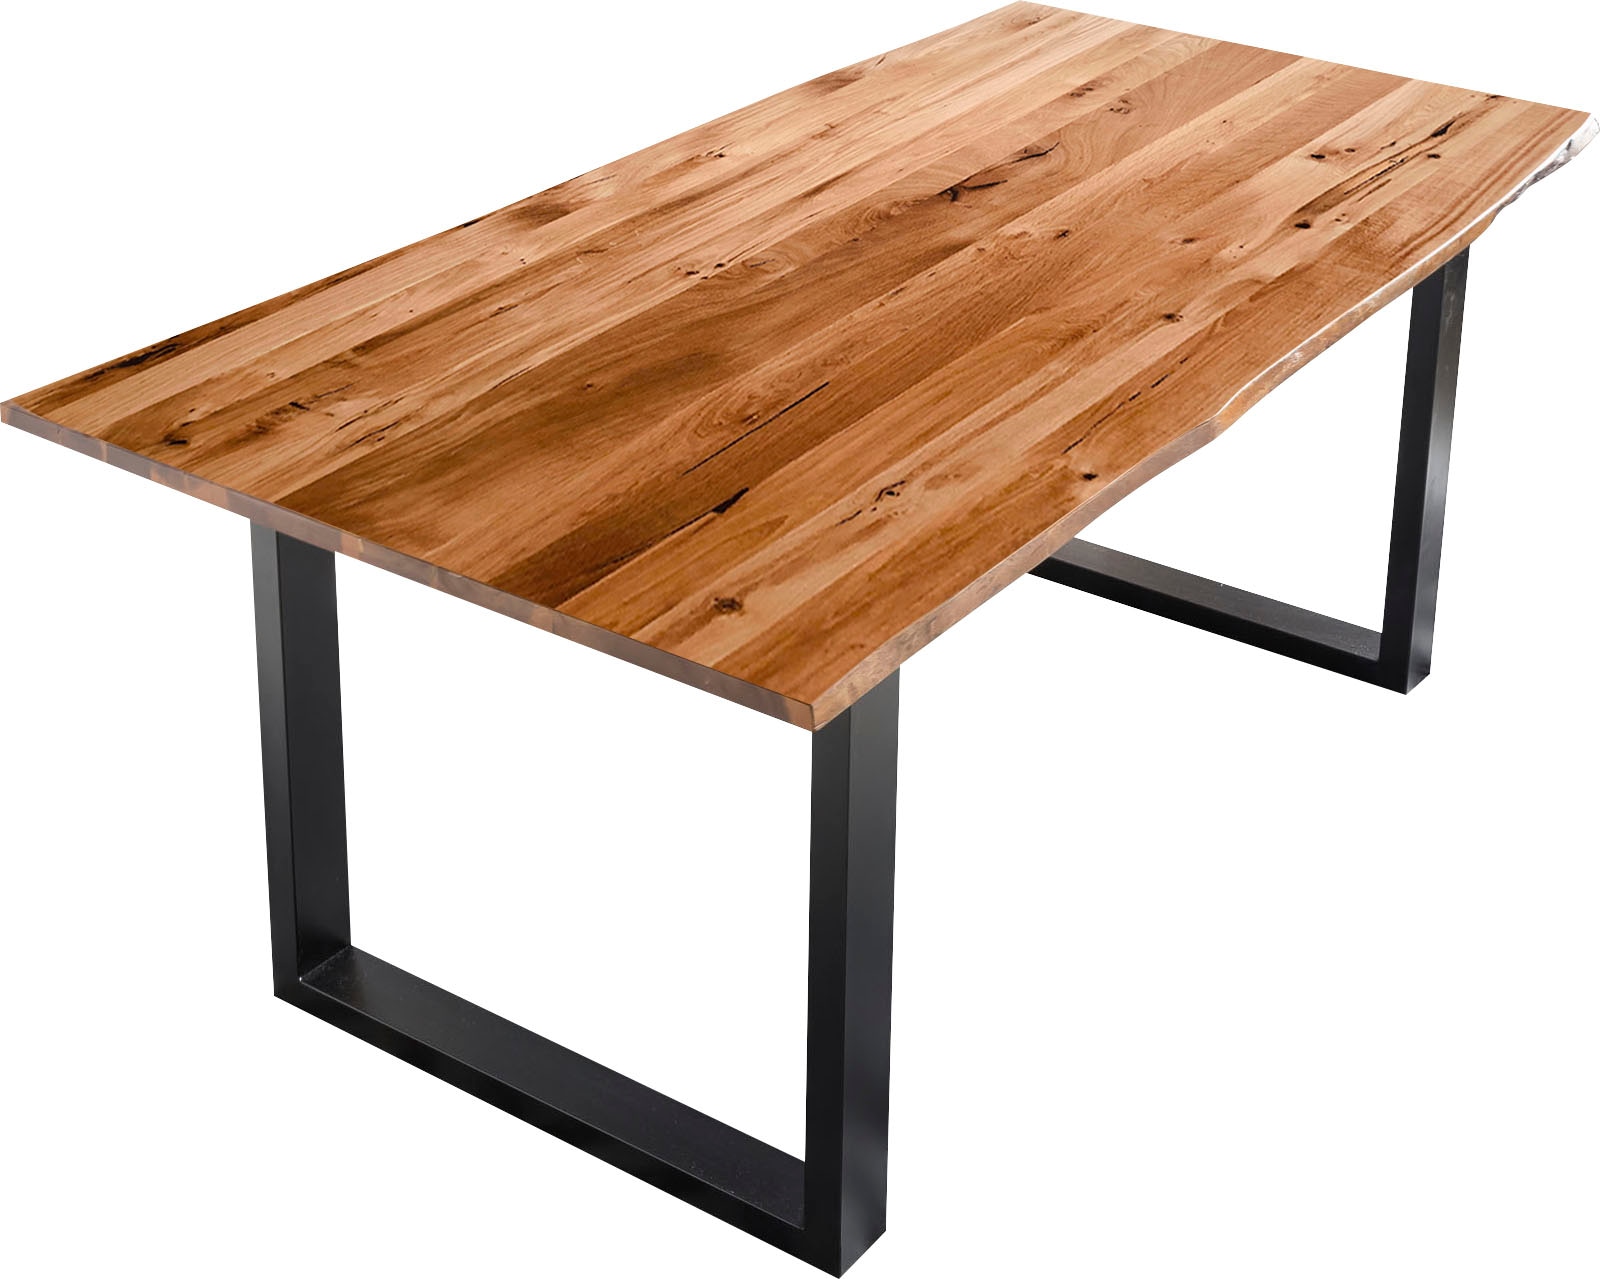 SalesFever Baumkantentisch, Sichtbare Maserung und Astlöcher, bestellen Esstisch Massivholz auf Rechnung aus